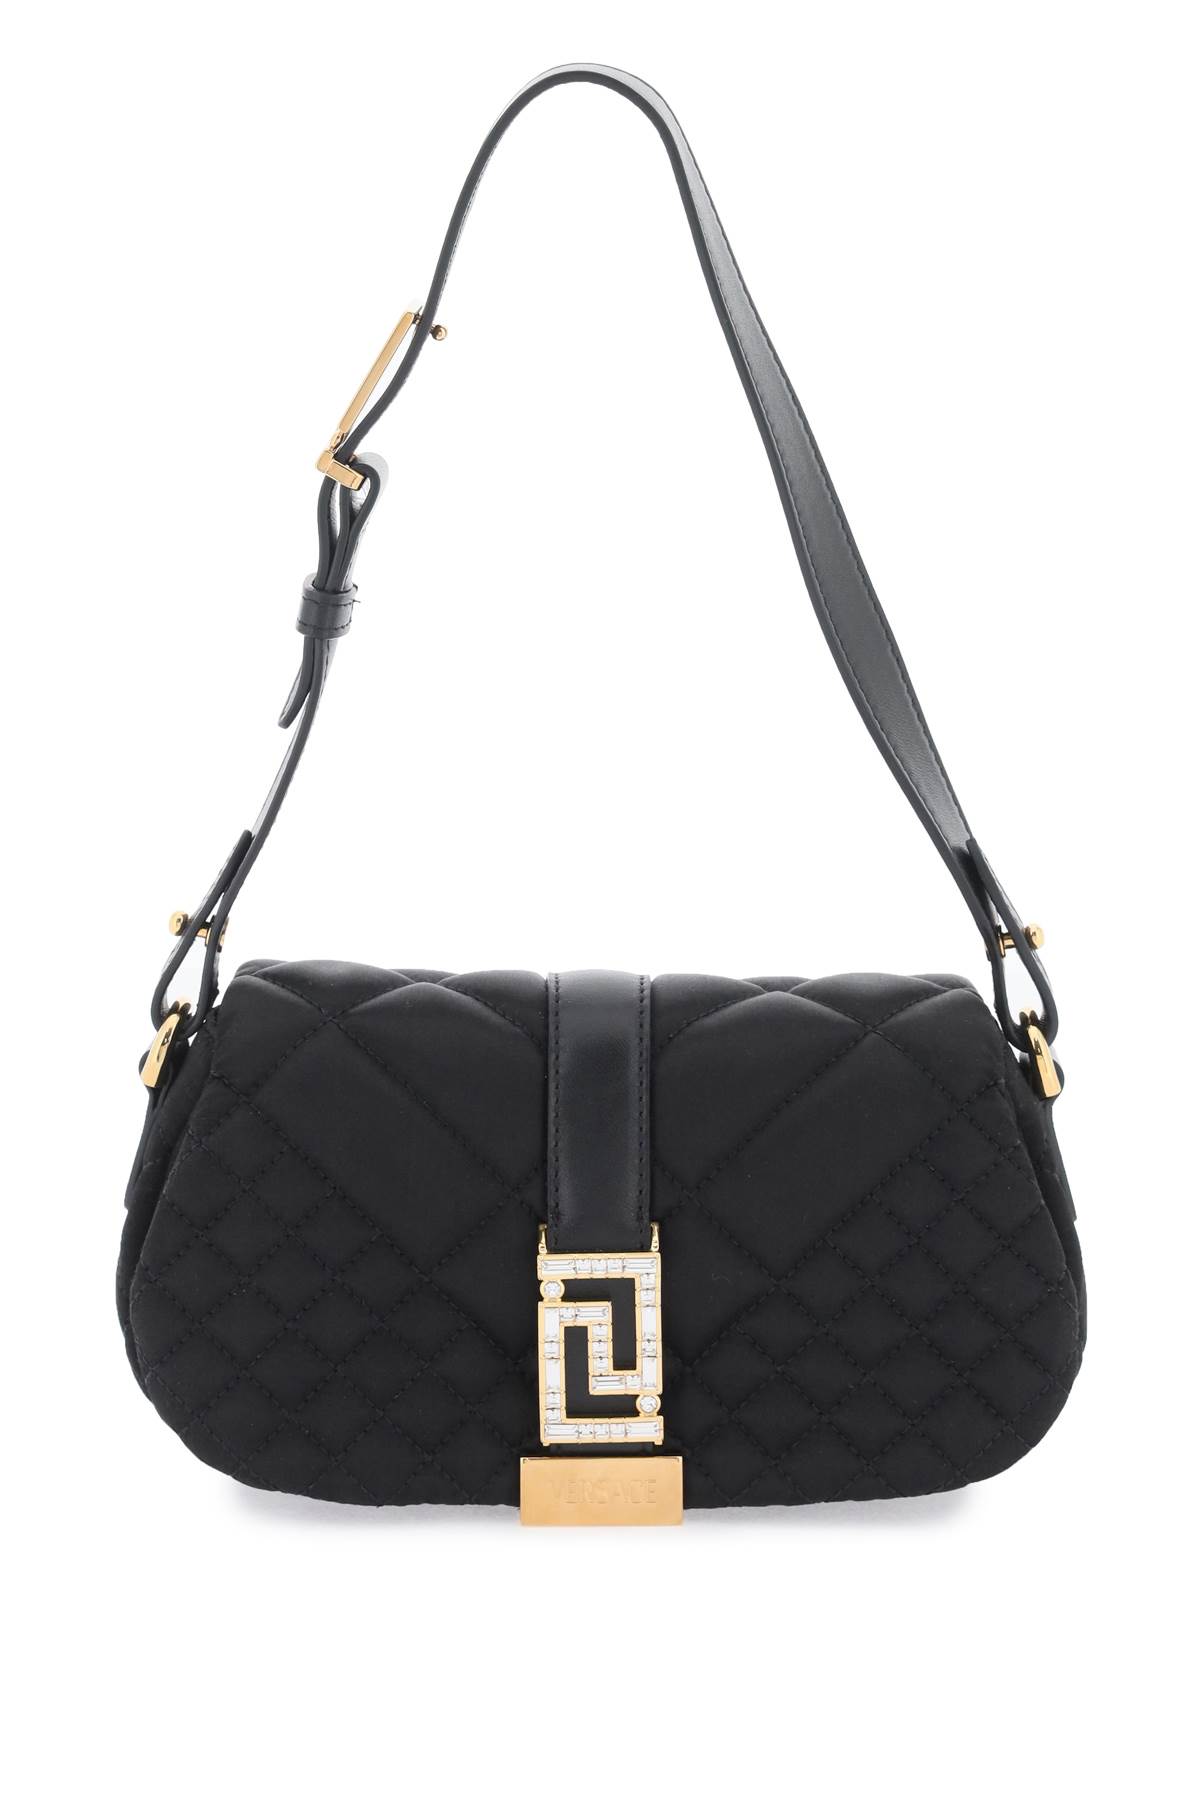 Versace Greca Goddess Satin Mini Bag In Black